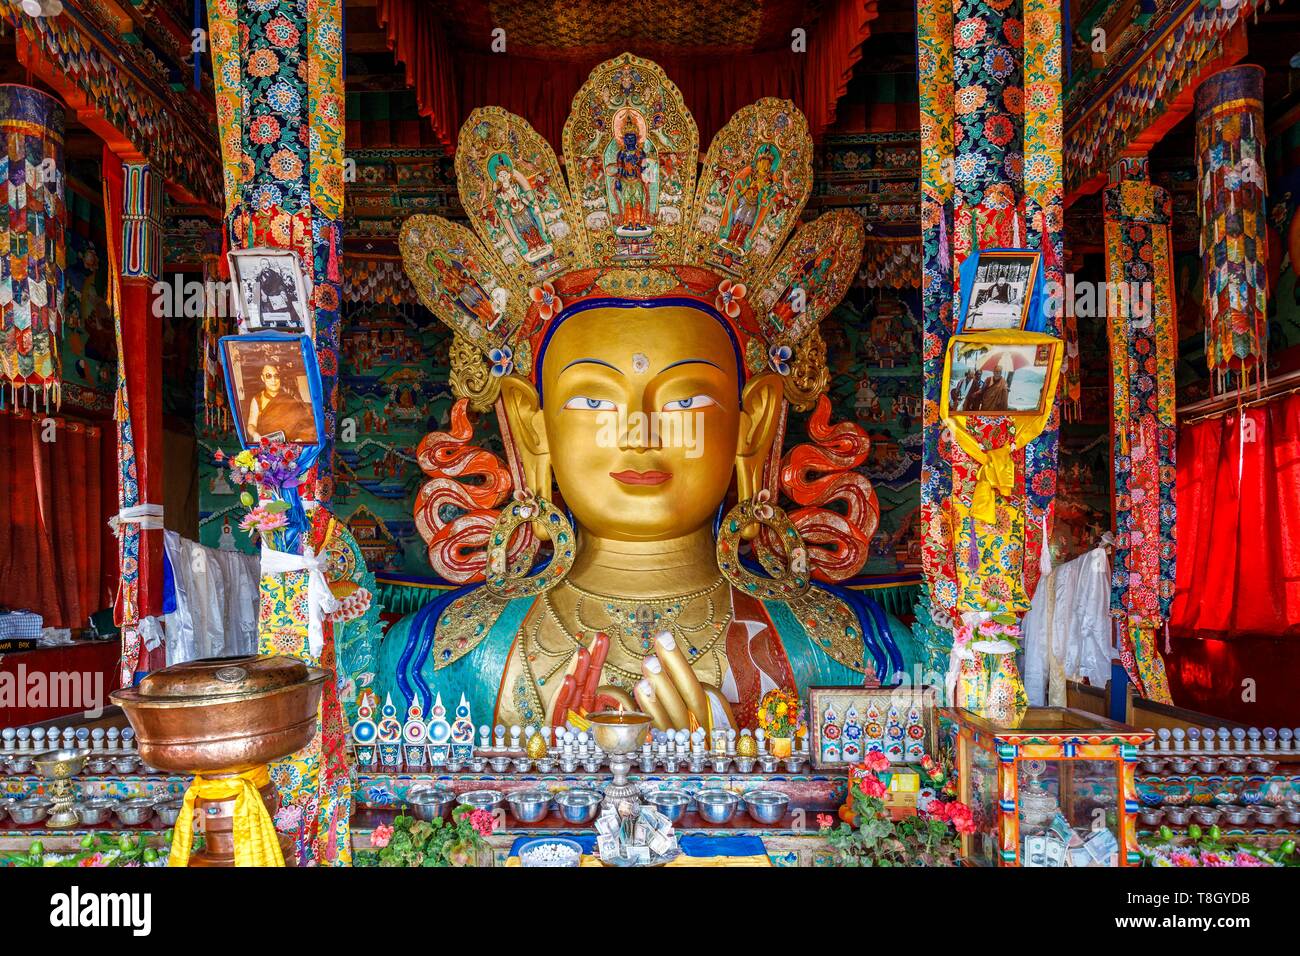 Indien, Bundesstaat Jammu und Kashmir, Himalaya, Ladakh, Indus Valley, 12 Meter hohe Statue des Buddha Maitreya (der Buddha der Zukunft) auf zwei Etagen im Inneren des Chamkhang von Thiksey Gompa (Kloster) Stockfoto